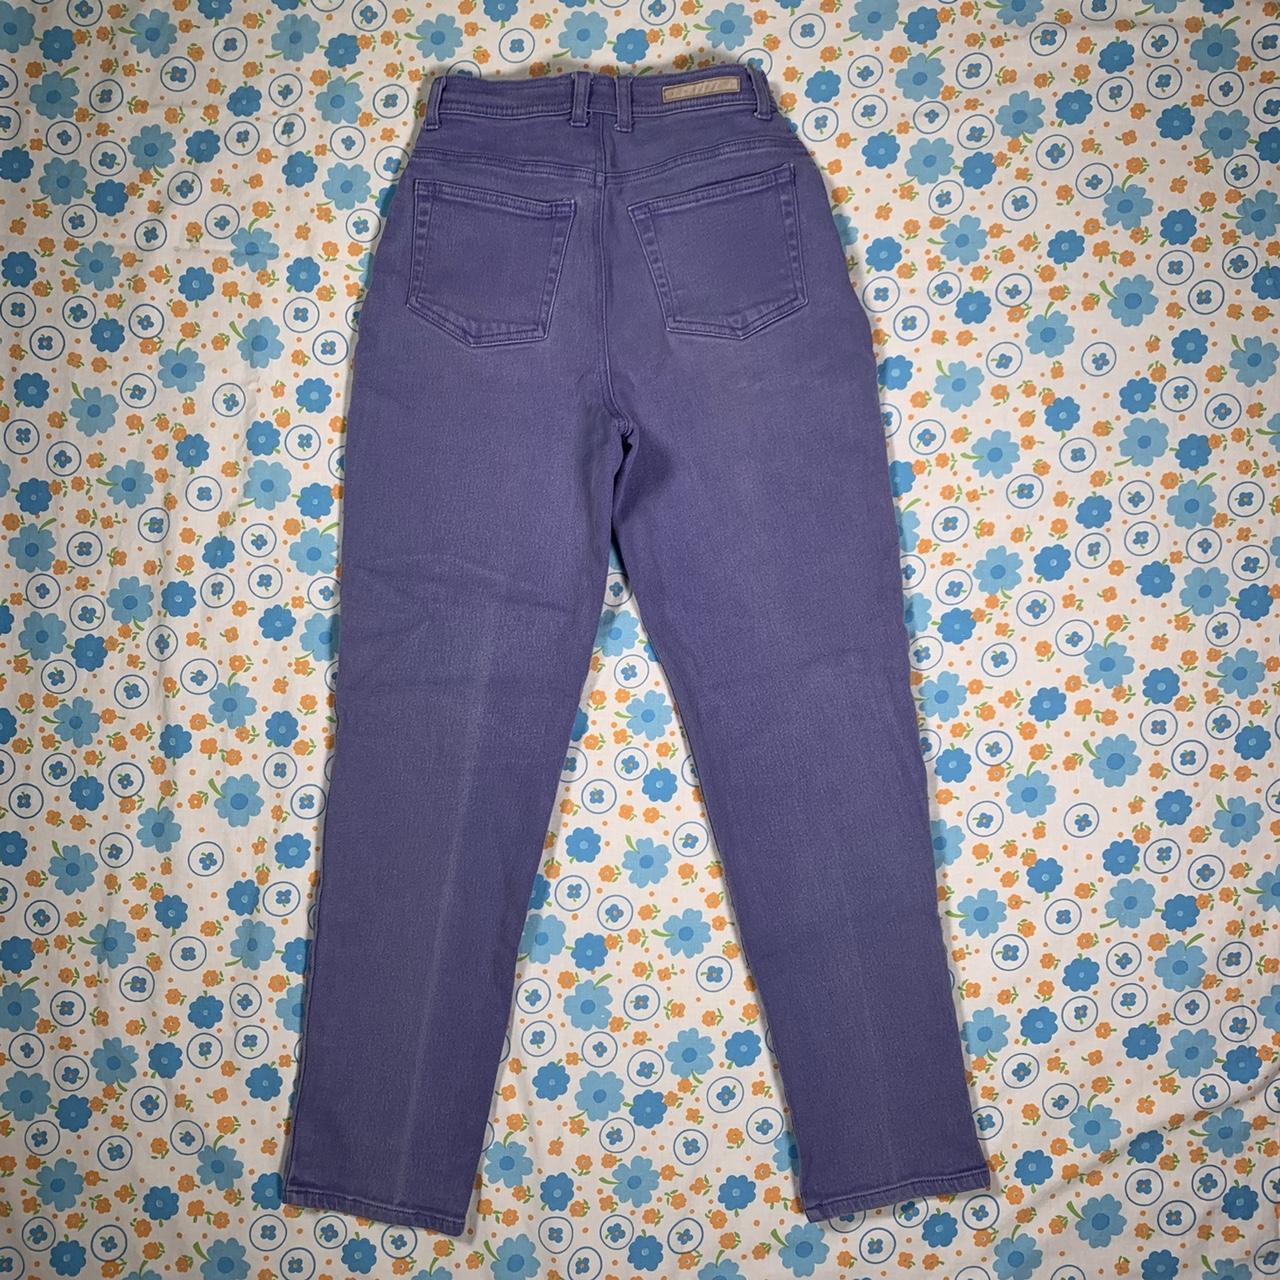 Vintage 90s lavender purple mom jeans. High waisted... - Depop